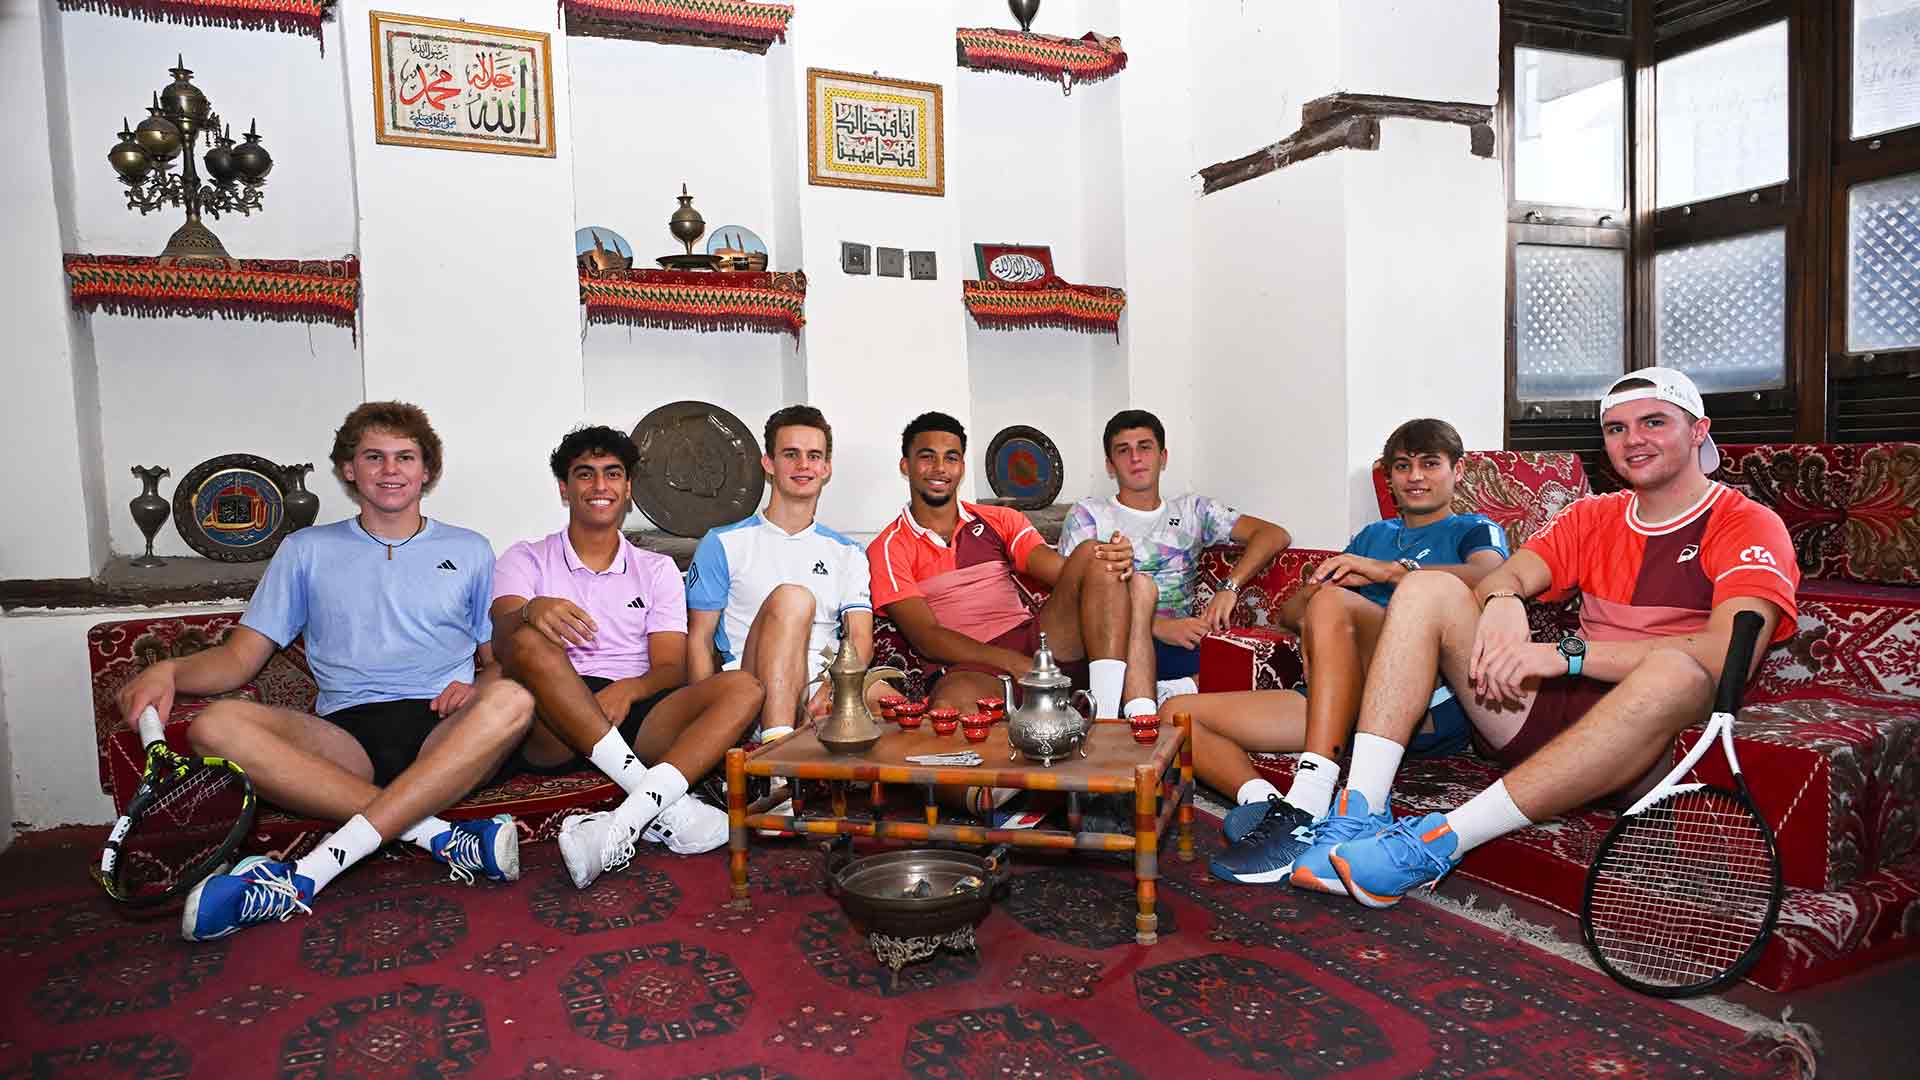 From left to right, Alex Michelsen, Abdullah Shelbayh, Luca Van Assche, Arthur Fils, Luca Nardi, Flavio Cobolli, Dominic Stricker.